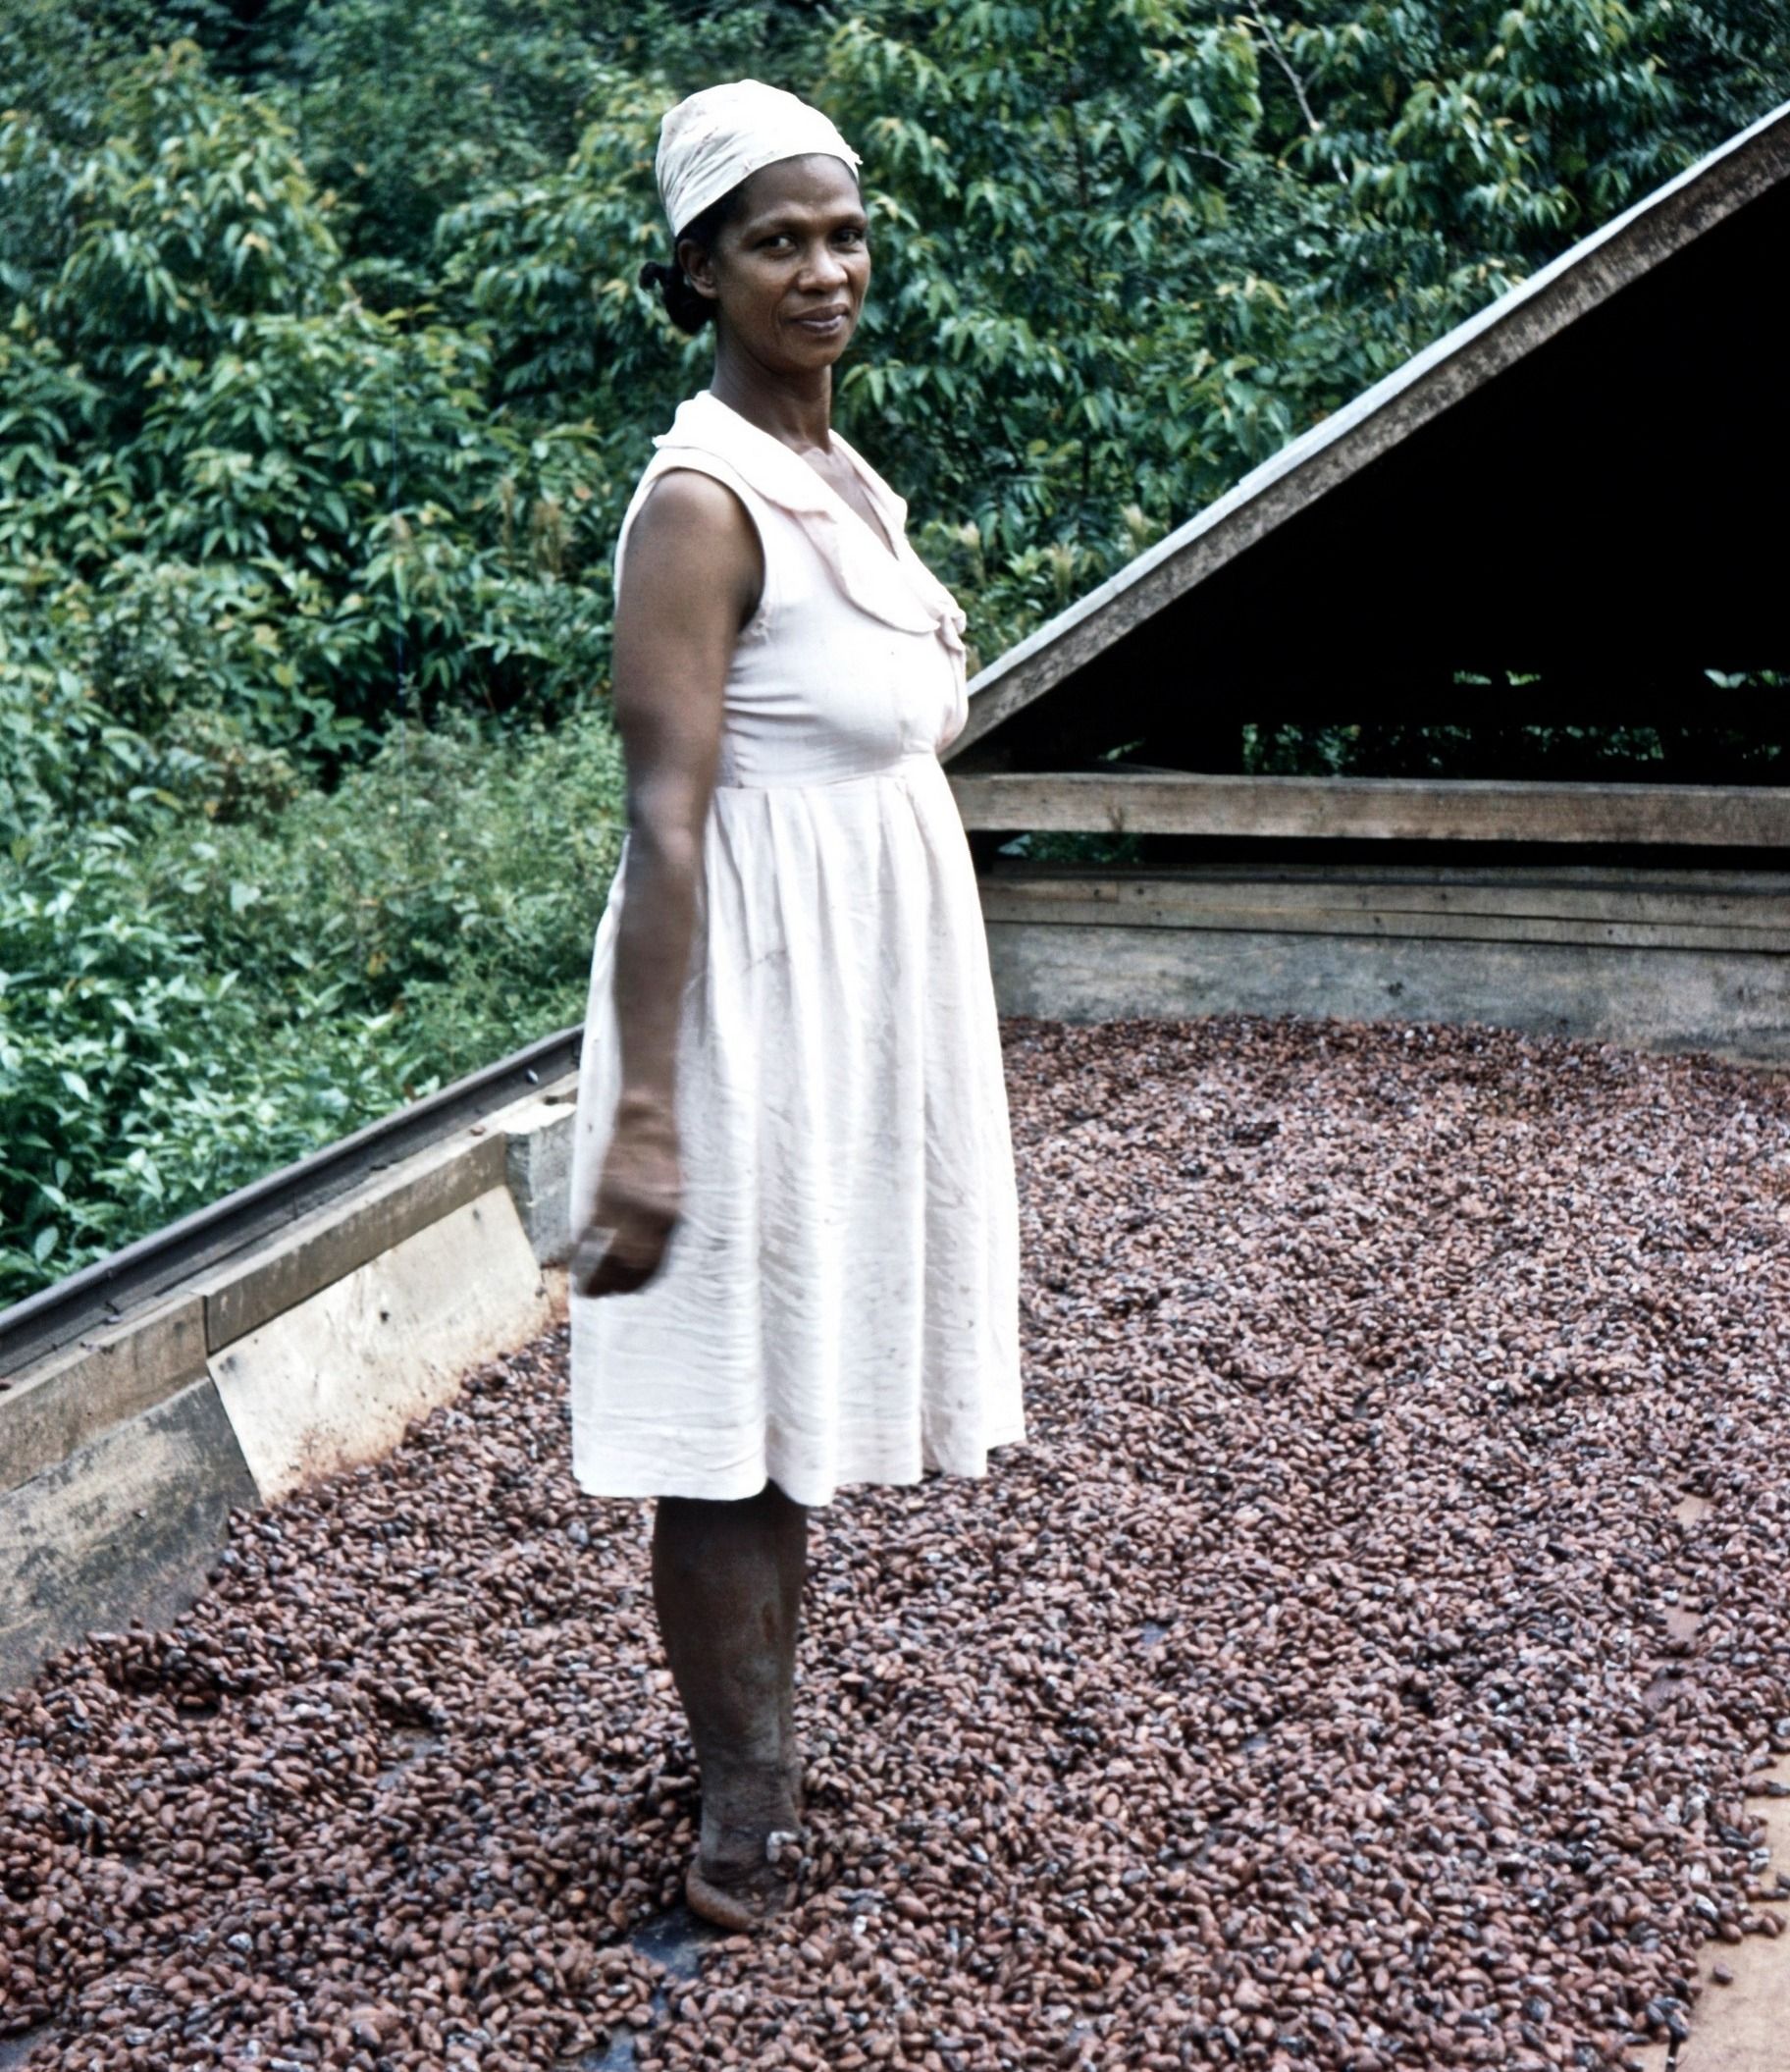 Osoby o "niewłaściwym" kolorze skóry - nawet jeśli pochodziły z Imperium Brytyjskiego - miały trudniej na Wyspach niż Europejczycy. Na tym zdjęciu z ok. 1957 roku widzimy młodą rodaczkę Odelle na ziarnach kakaowca. (fot. John Hill, lic. CC BY-SA 4.0).